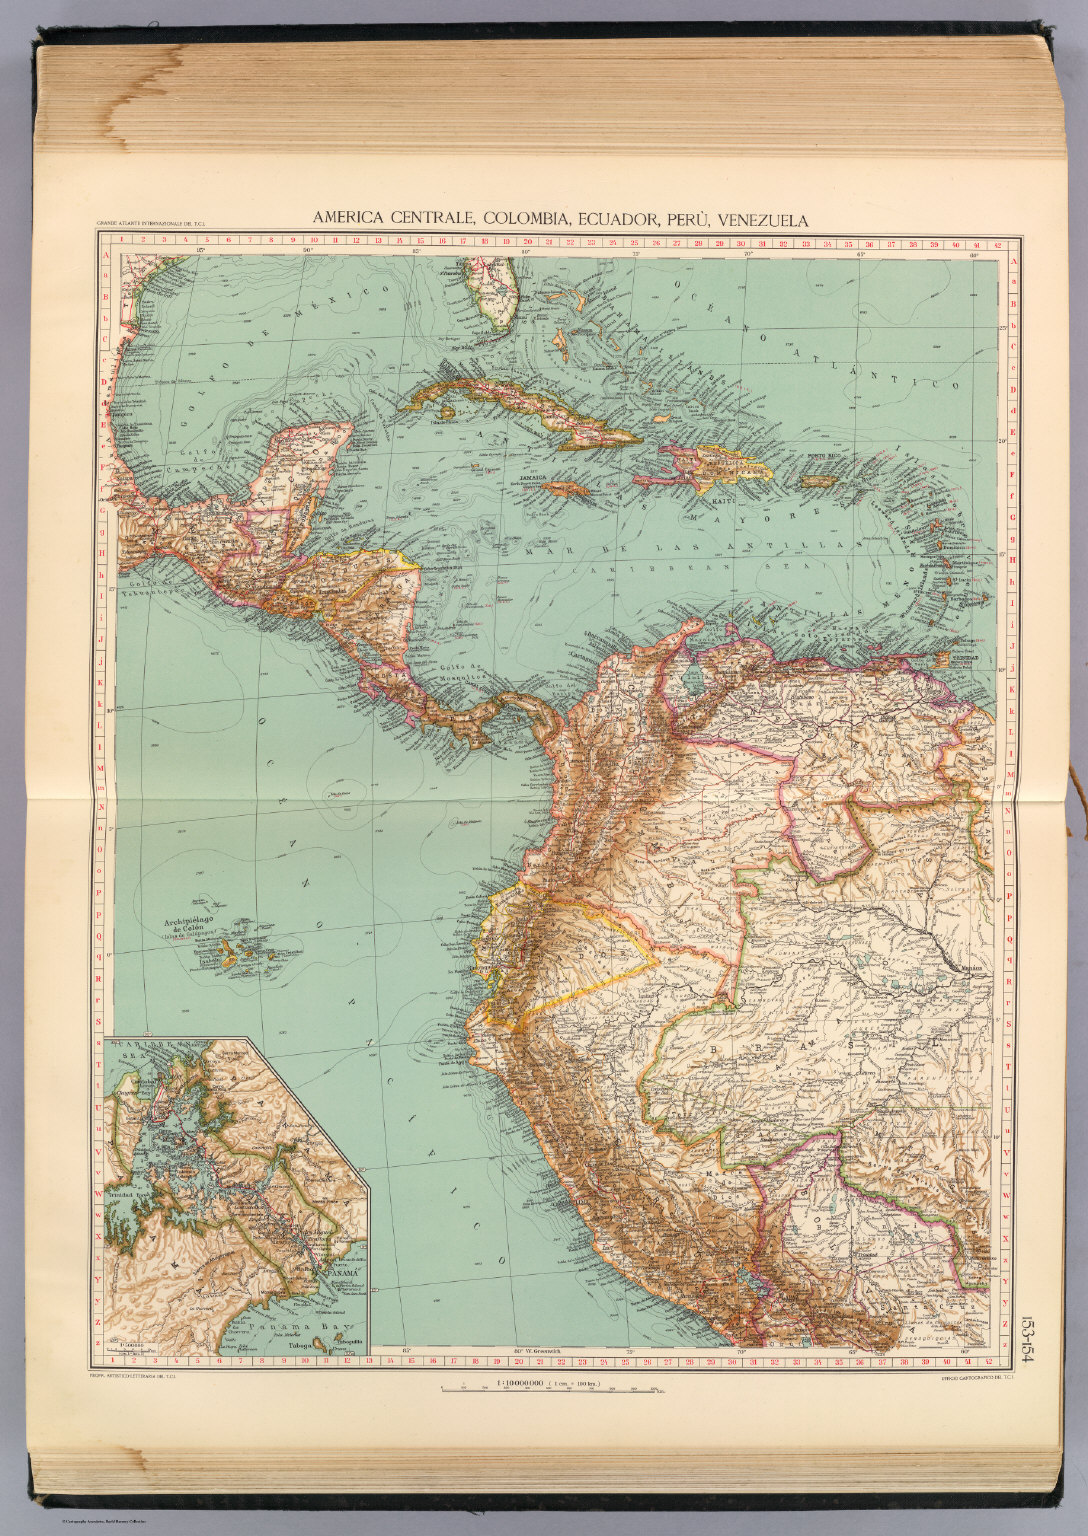 153-54. America Centrale, Colombia, Ecuador, Peru, Venezuela. - David ...